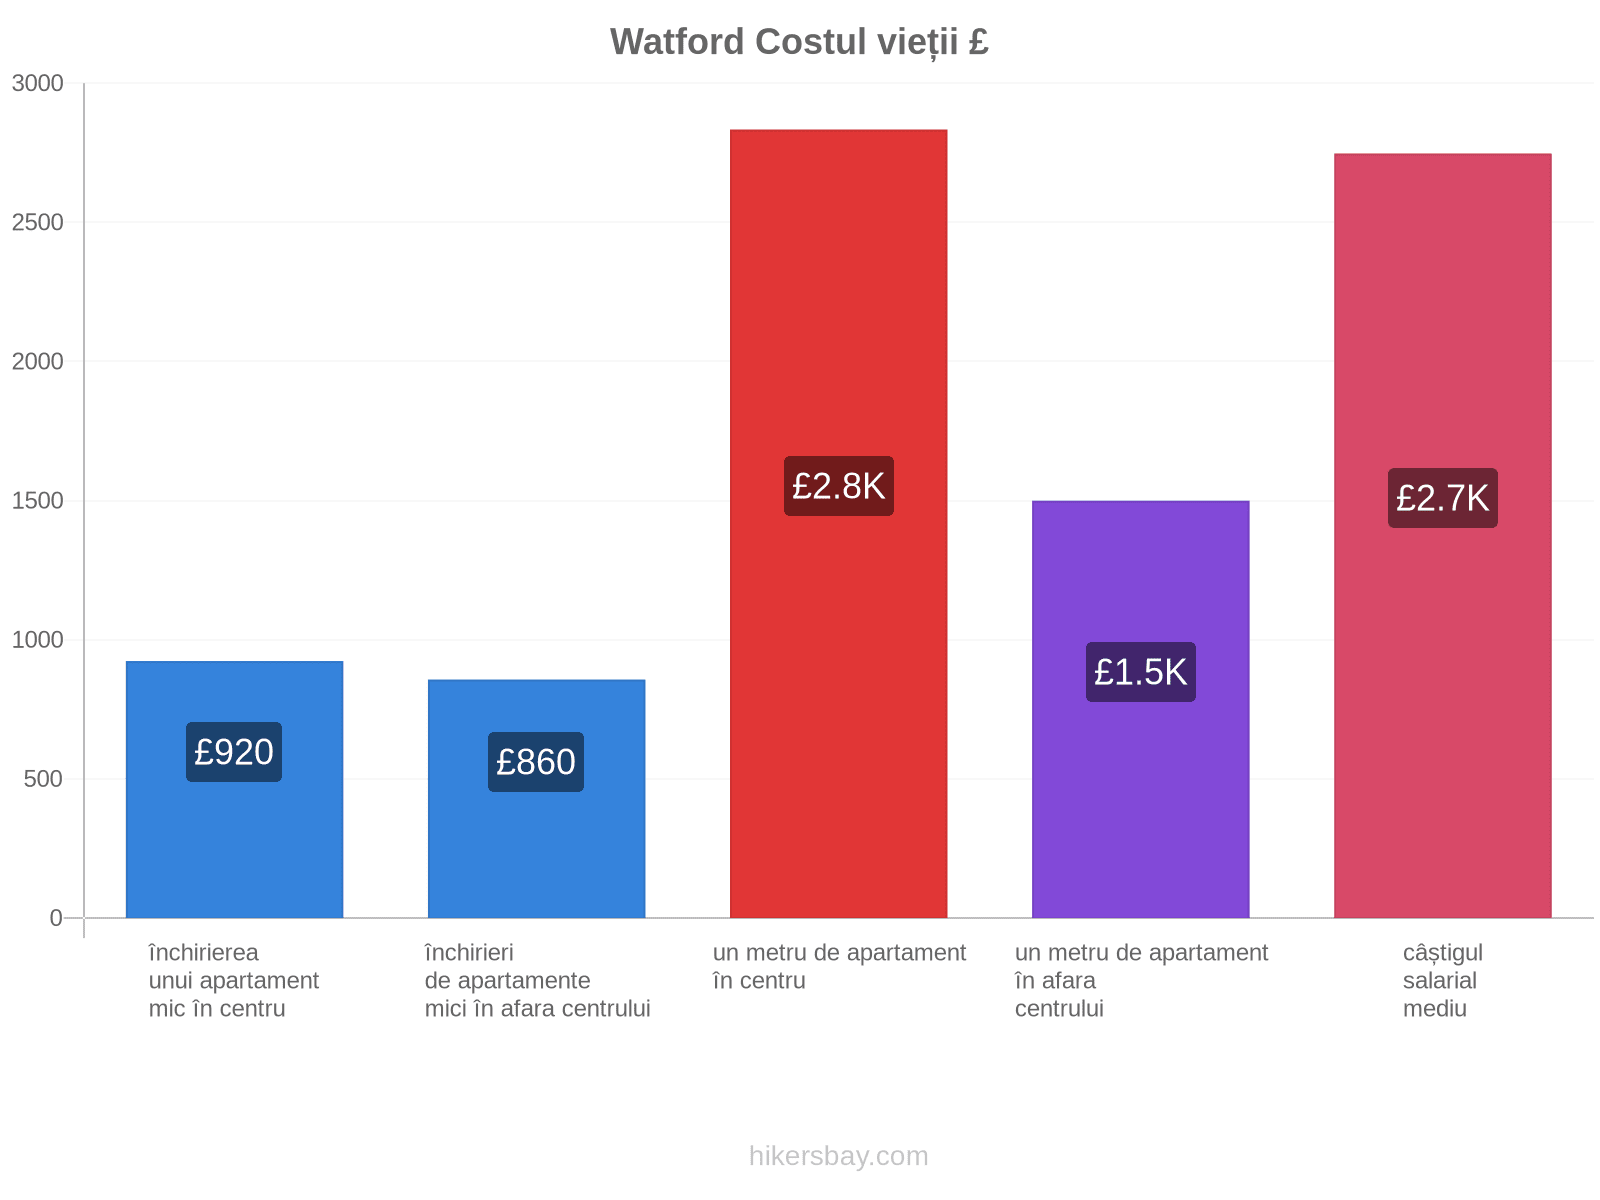 Watford costul vieții hikersbay.com